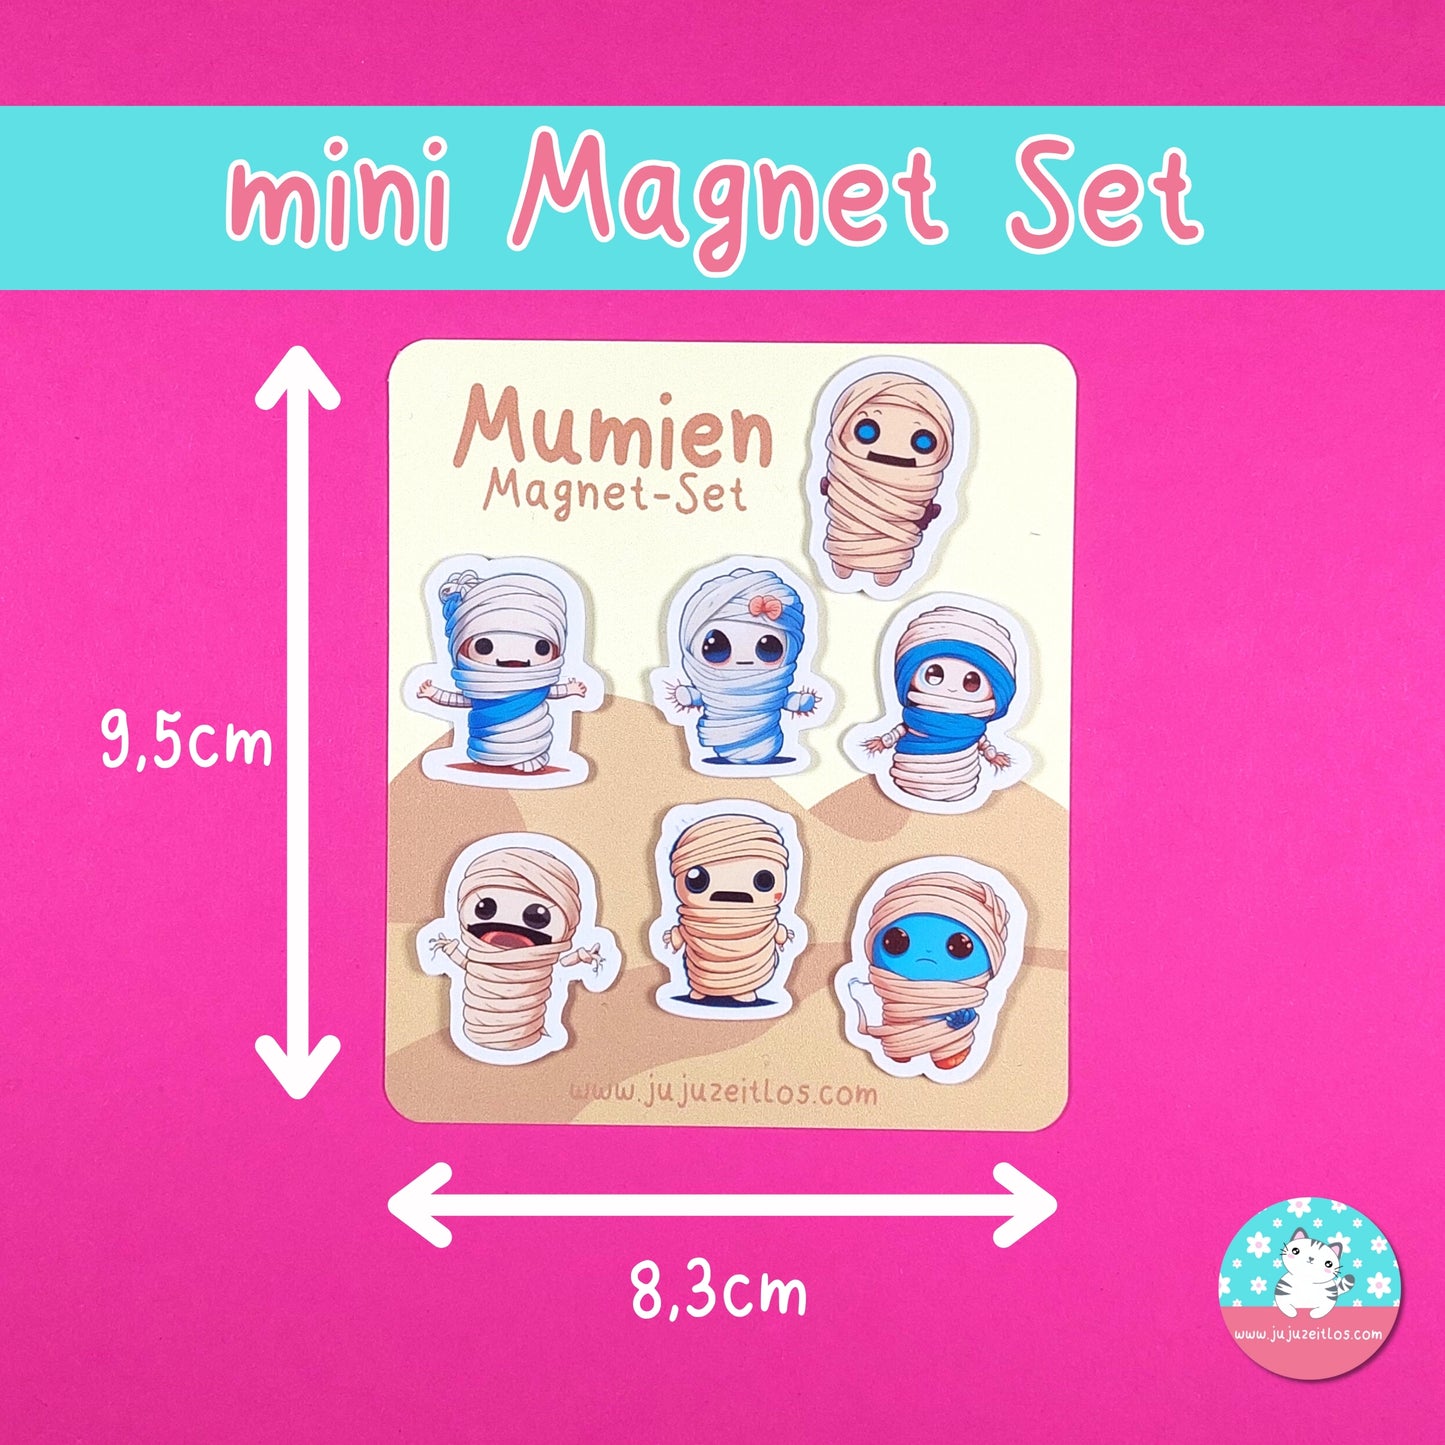 Mumien Magnet-Set ♡Memo & Notizen♡ - JujuZeitlos